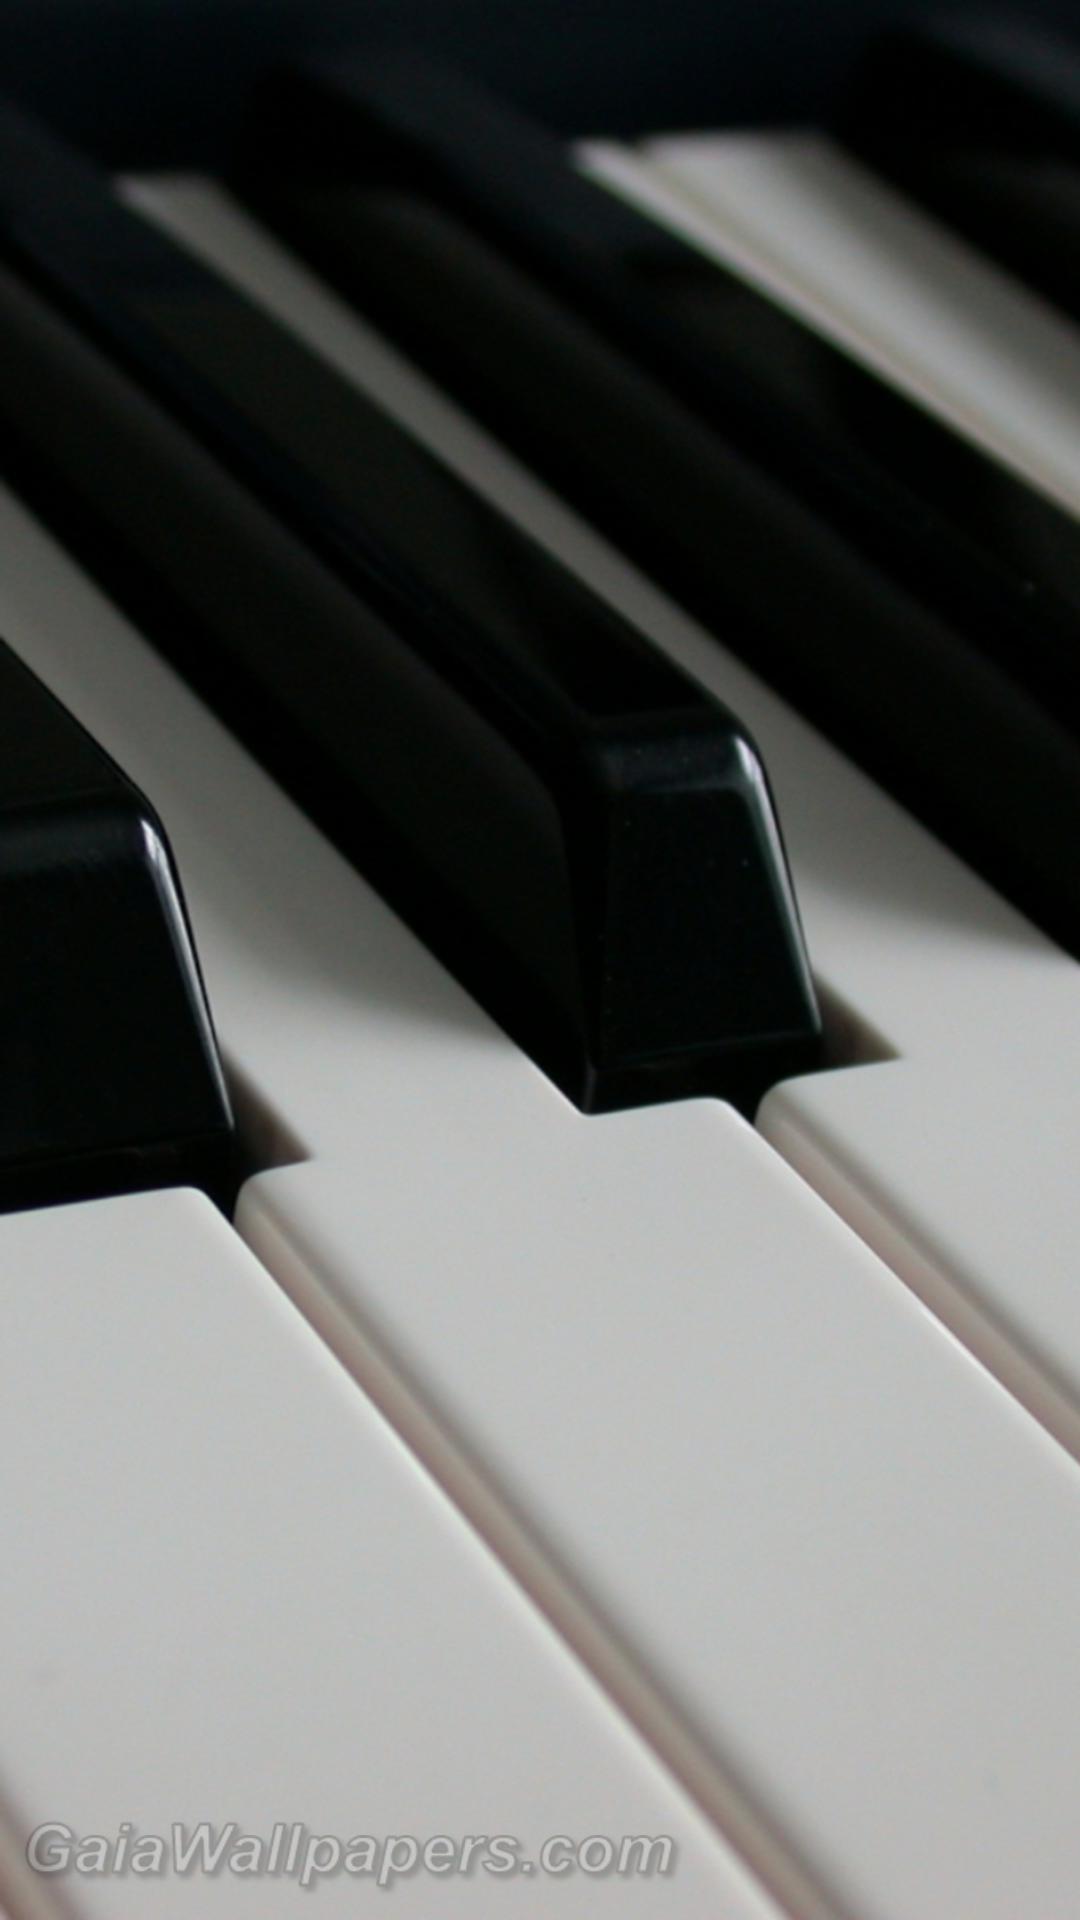 Touches de piano - Fonds d'écran gratuits